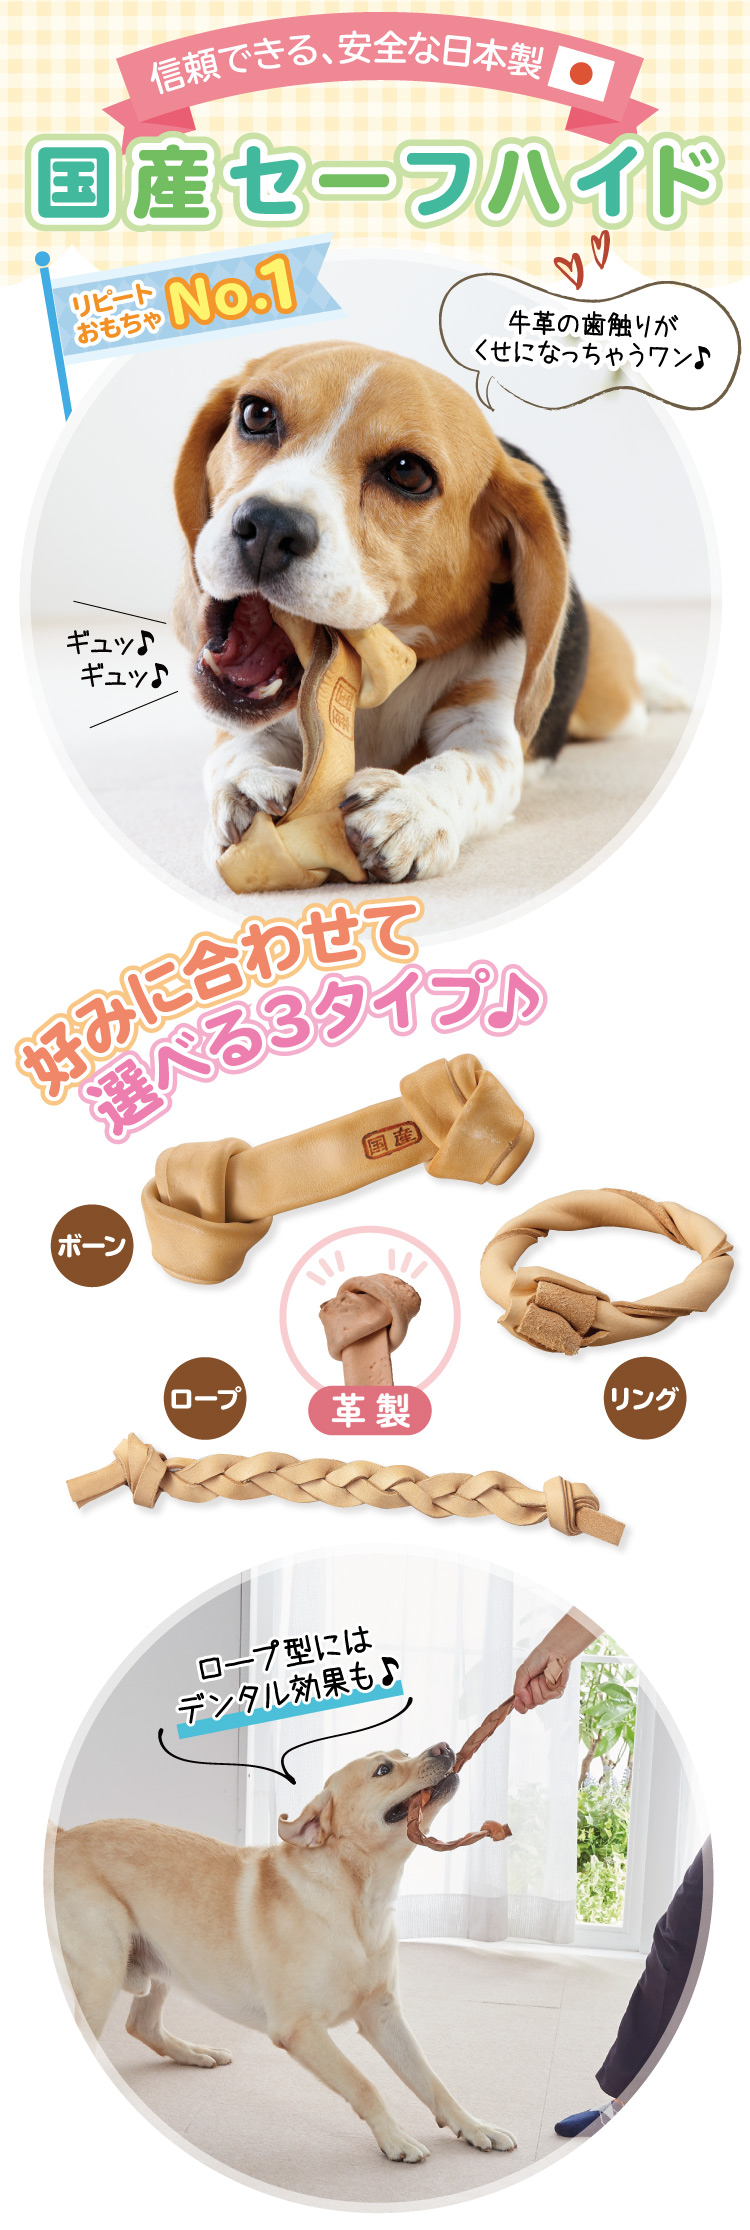 国産セーフハイド 革製犬用おもちゃ 犬用おもちゃ ペット用品の通販サイト ペピイ Peppy